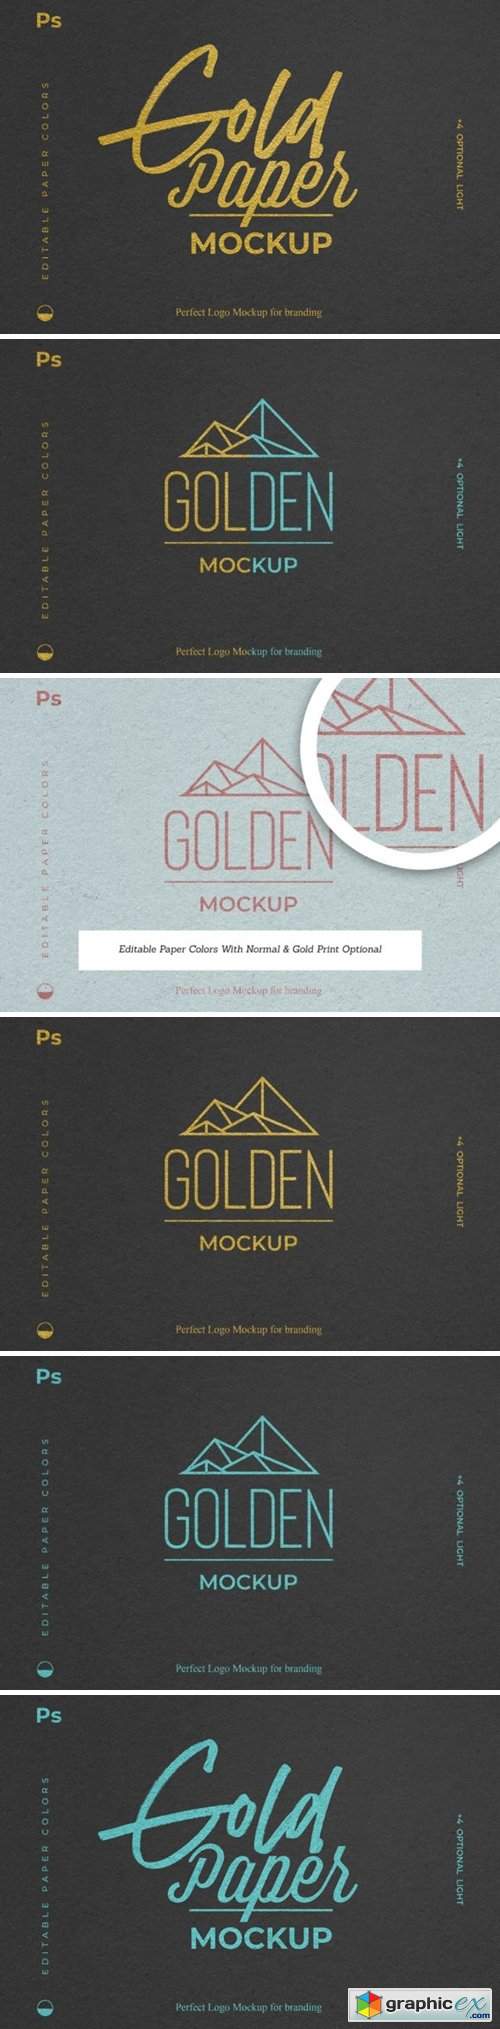  Gold Foil Paper Logo Mockup 